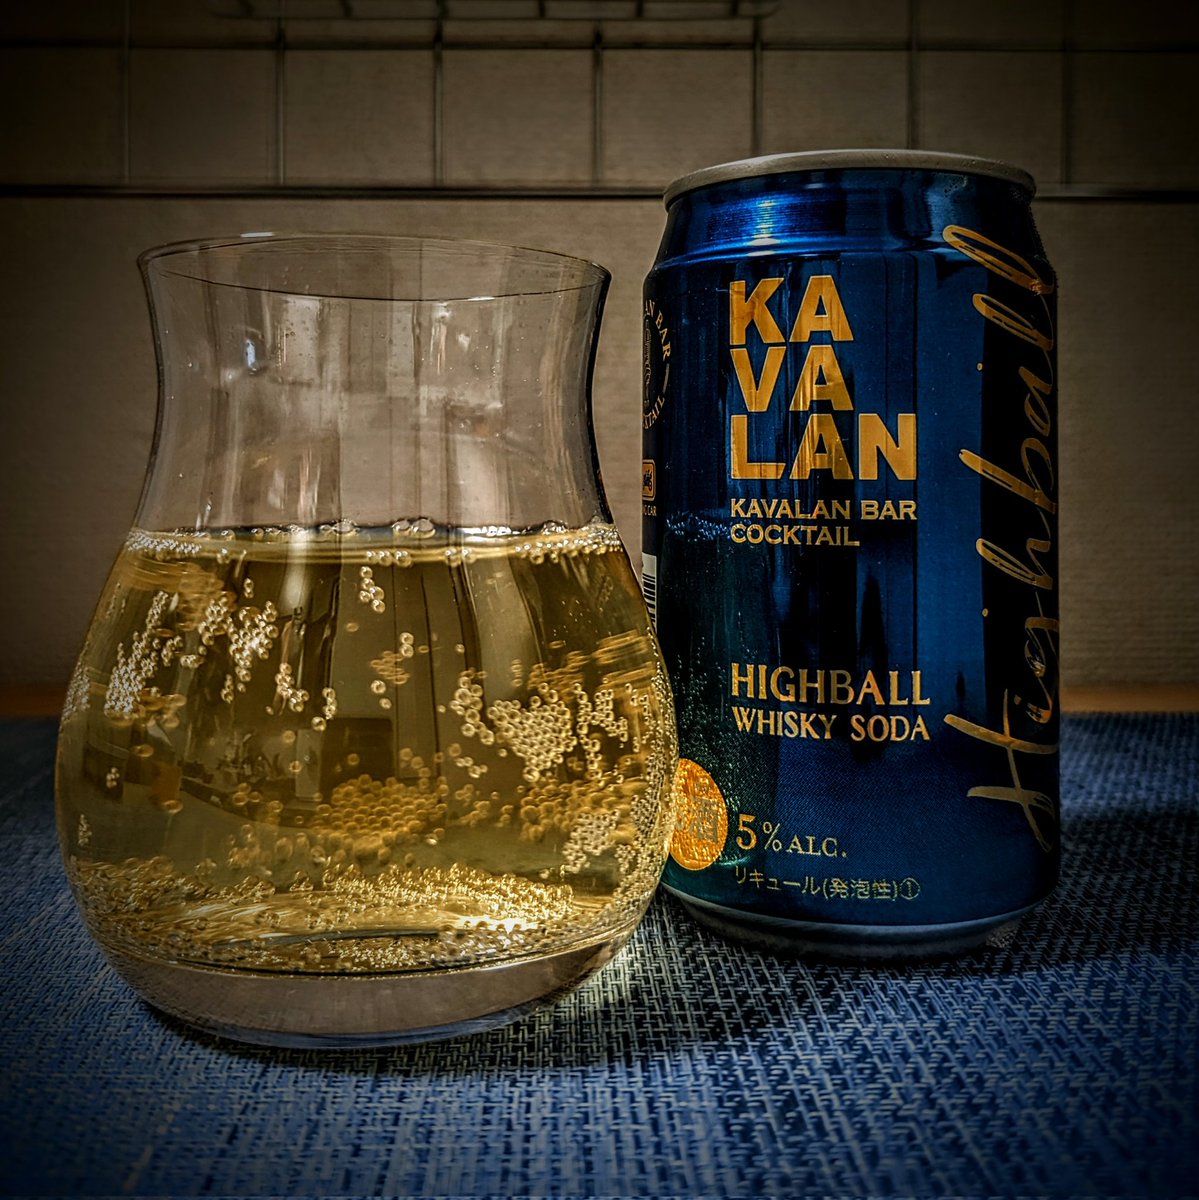 カバラン バーカクテル ハイボール、氷は入れずに頂きます。
めちゃめちゃ甘い。美味いとは思うけど、コレじゃない感。
#KAVALAN #KavalanBarCocktail #Highball #KavalanClassic #TaiwaneseWhisky #Whisky #WhiskySoda #ReadytoDrink